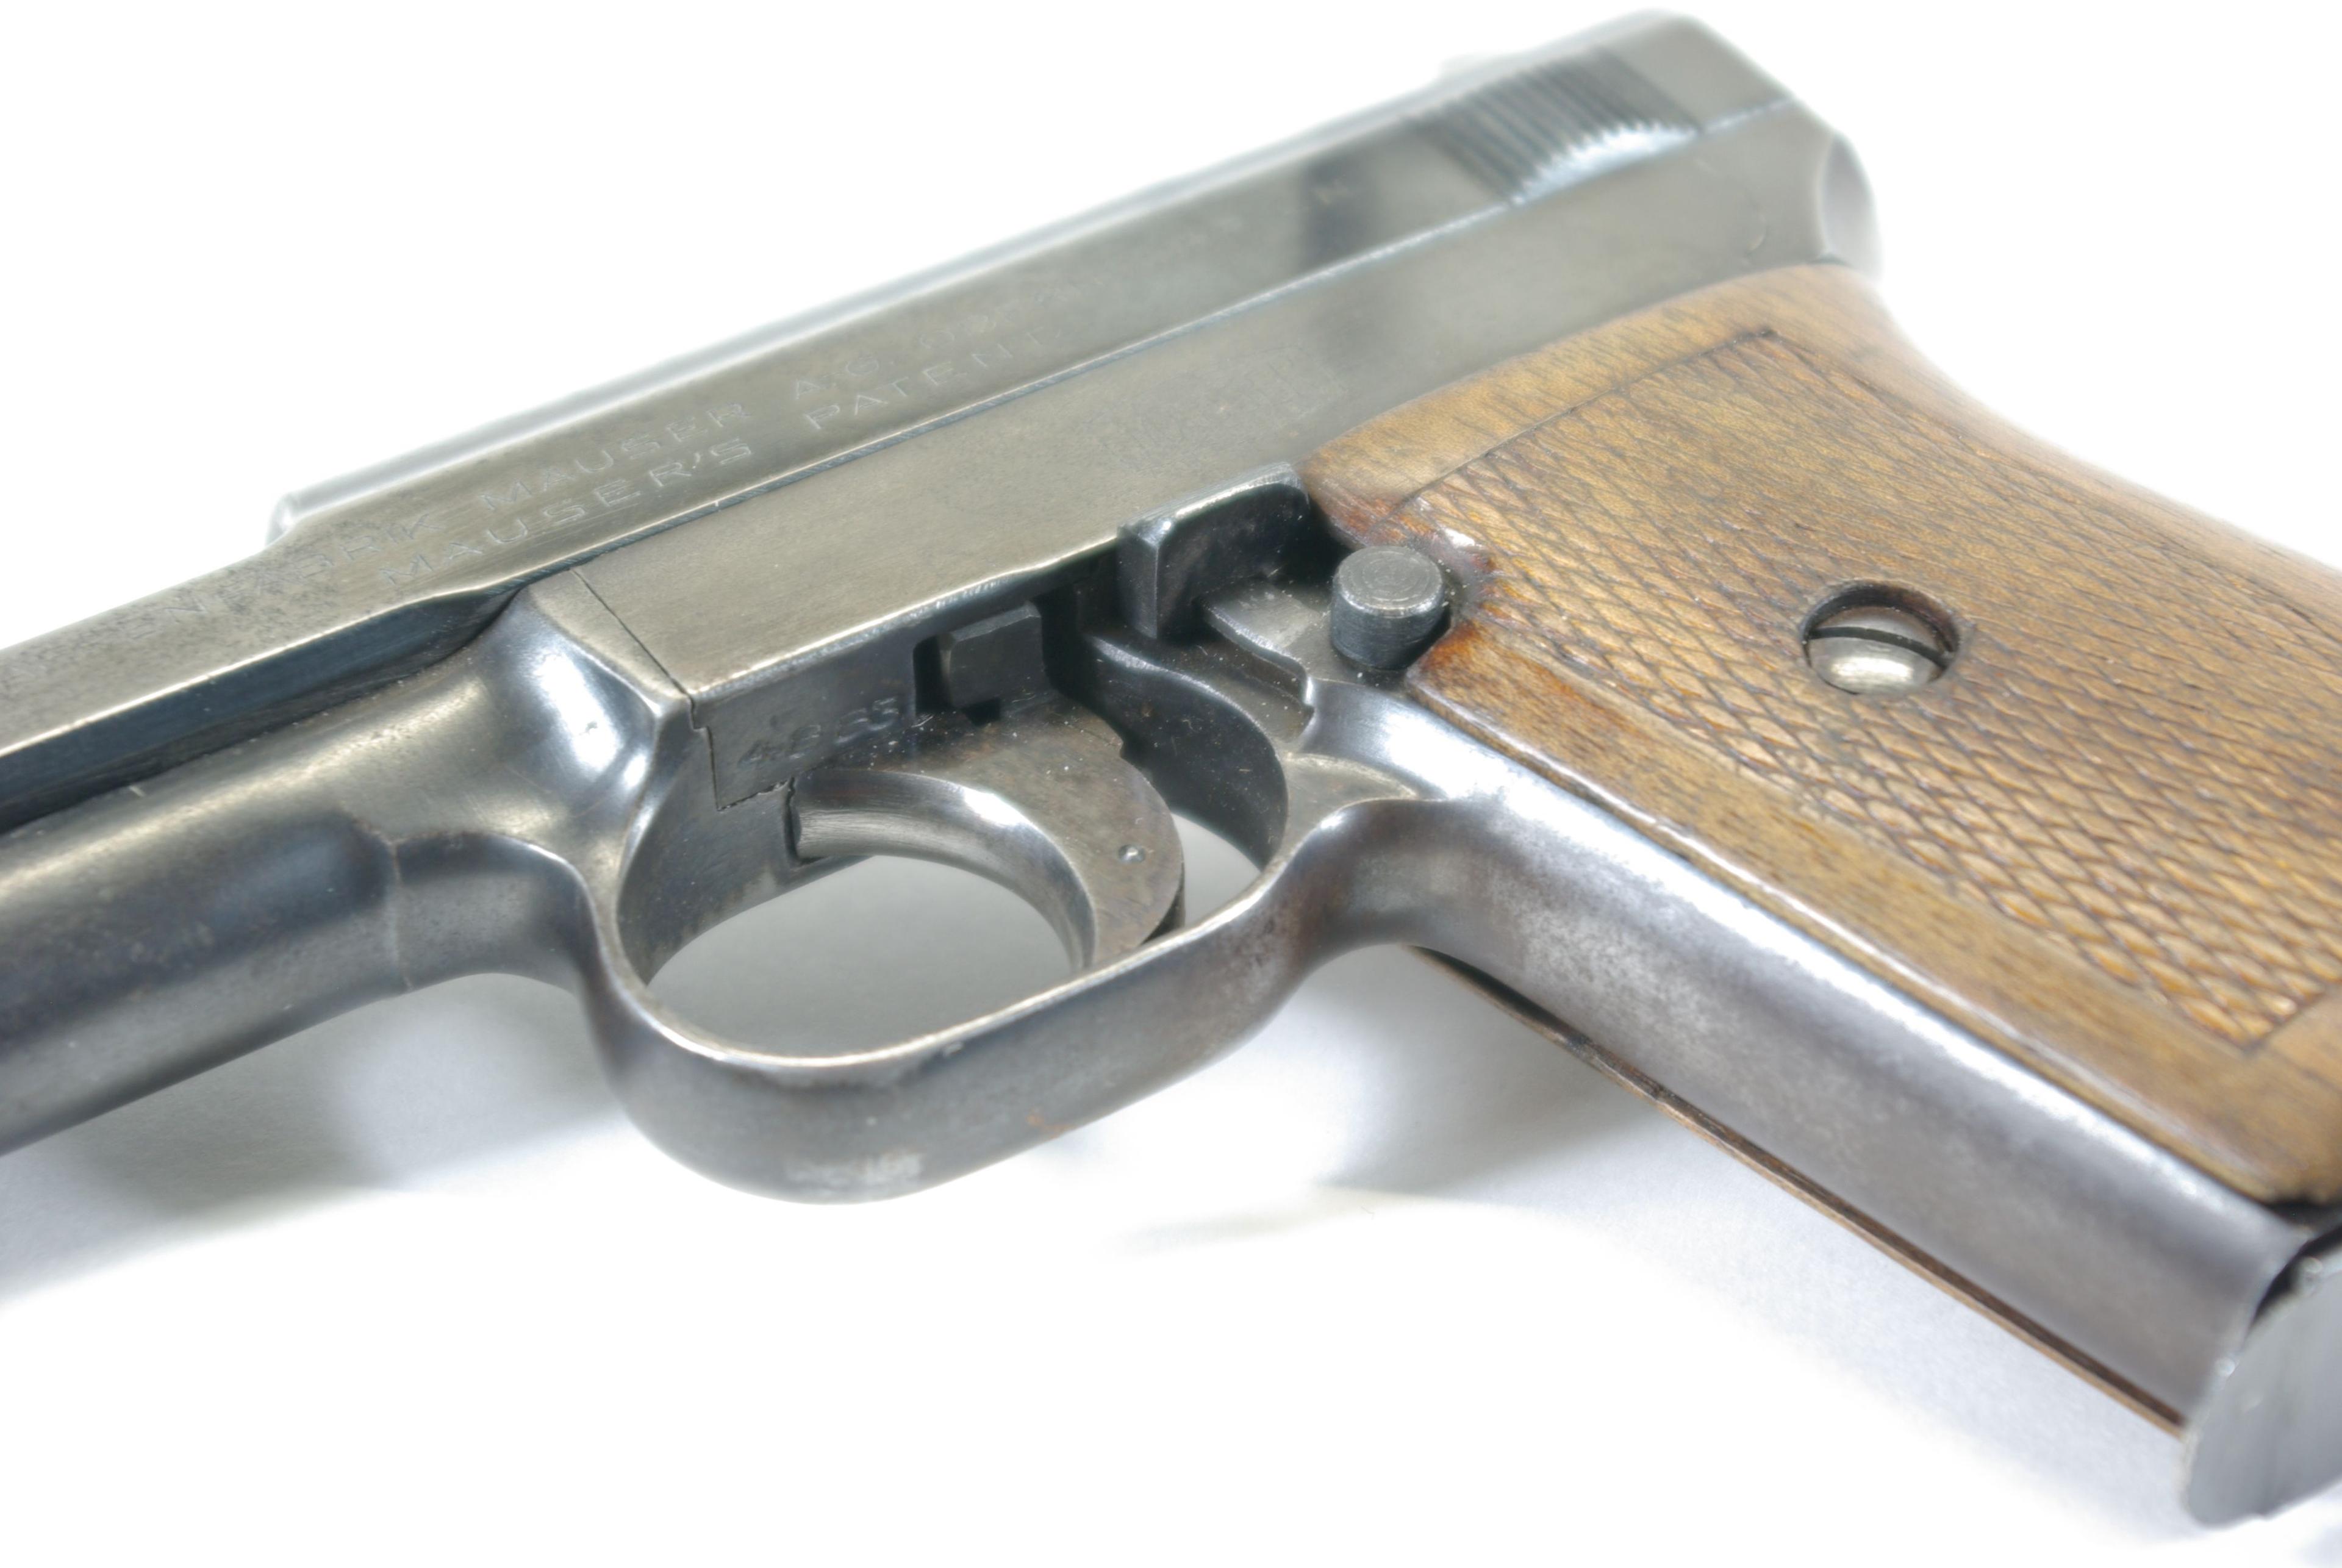 Mauser Model 1914 7.65  SN: 384883